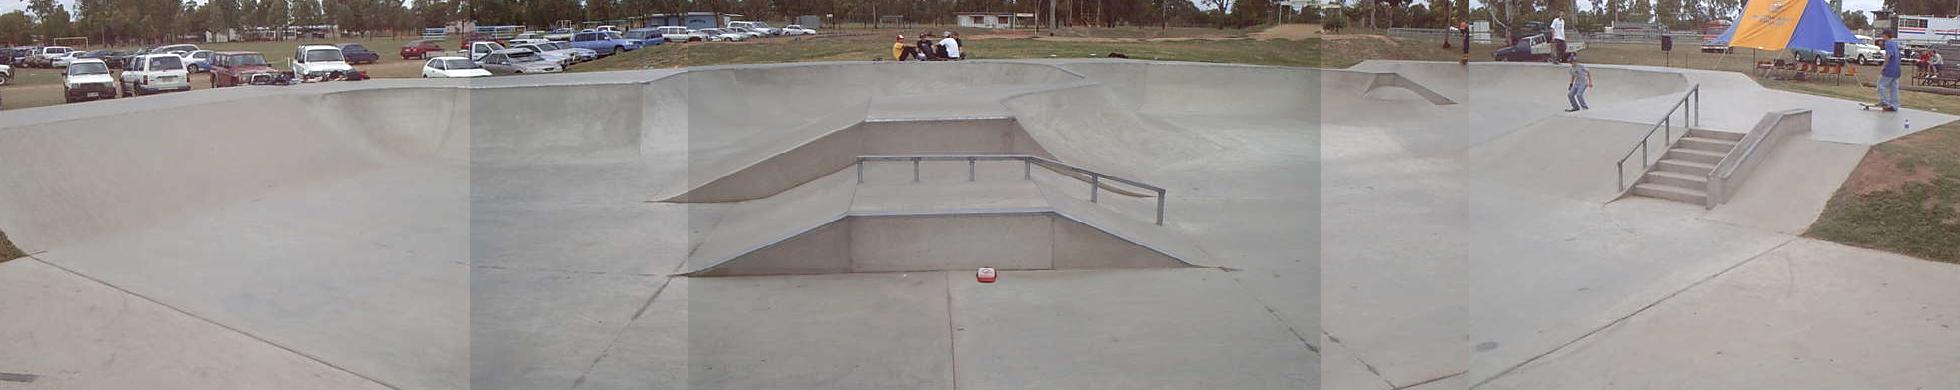 Moura Skatepark